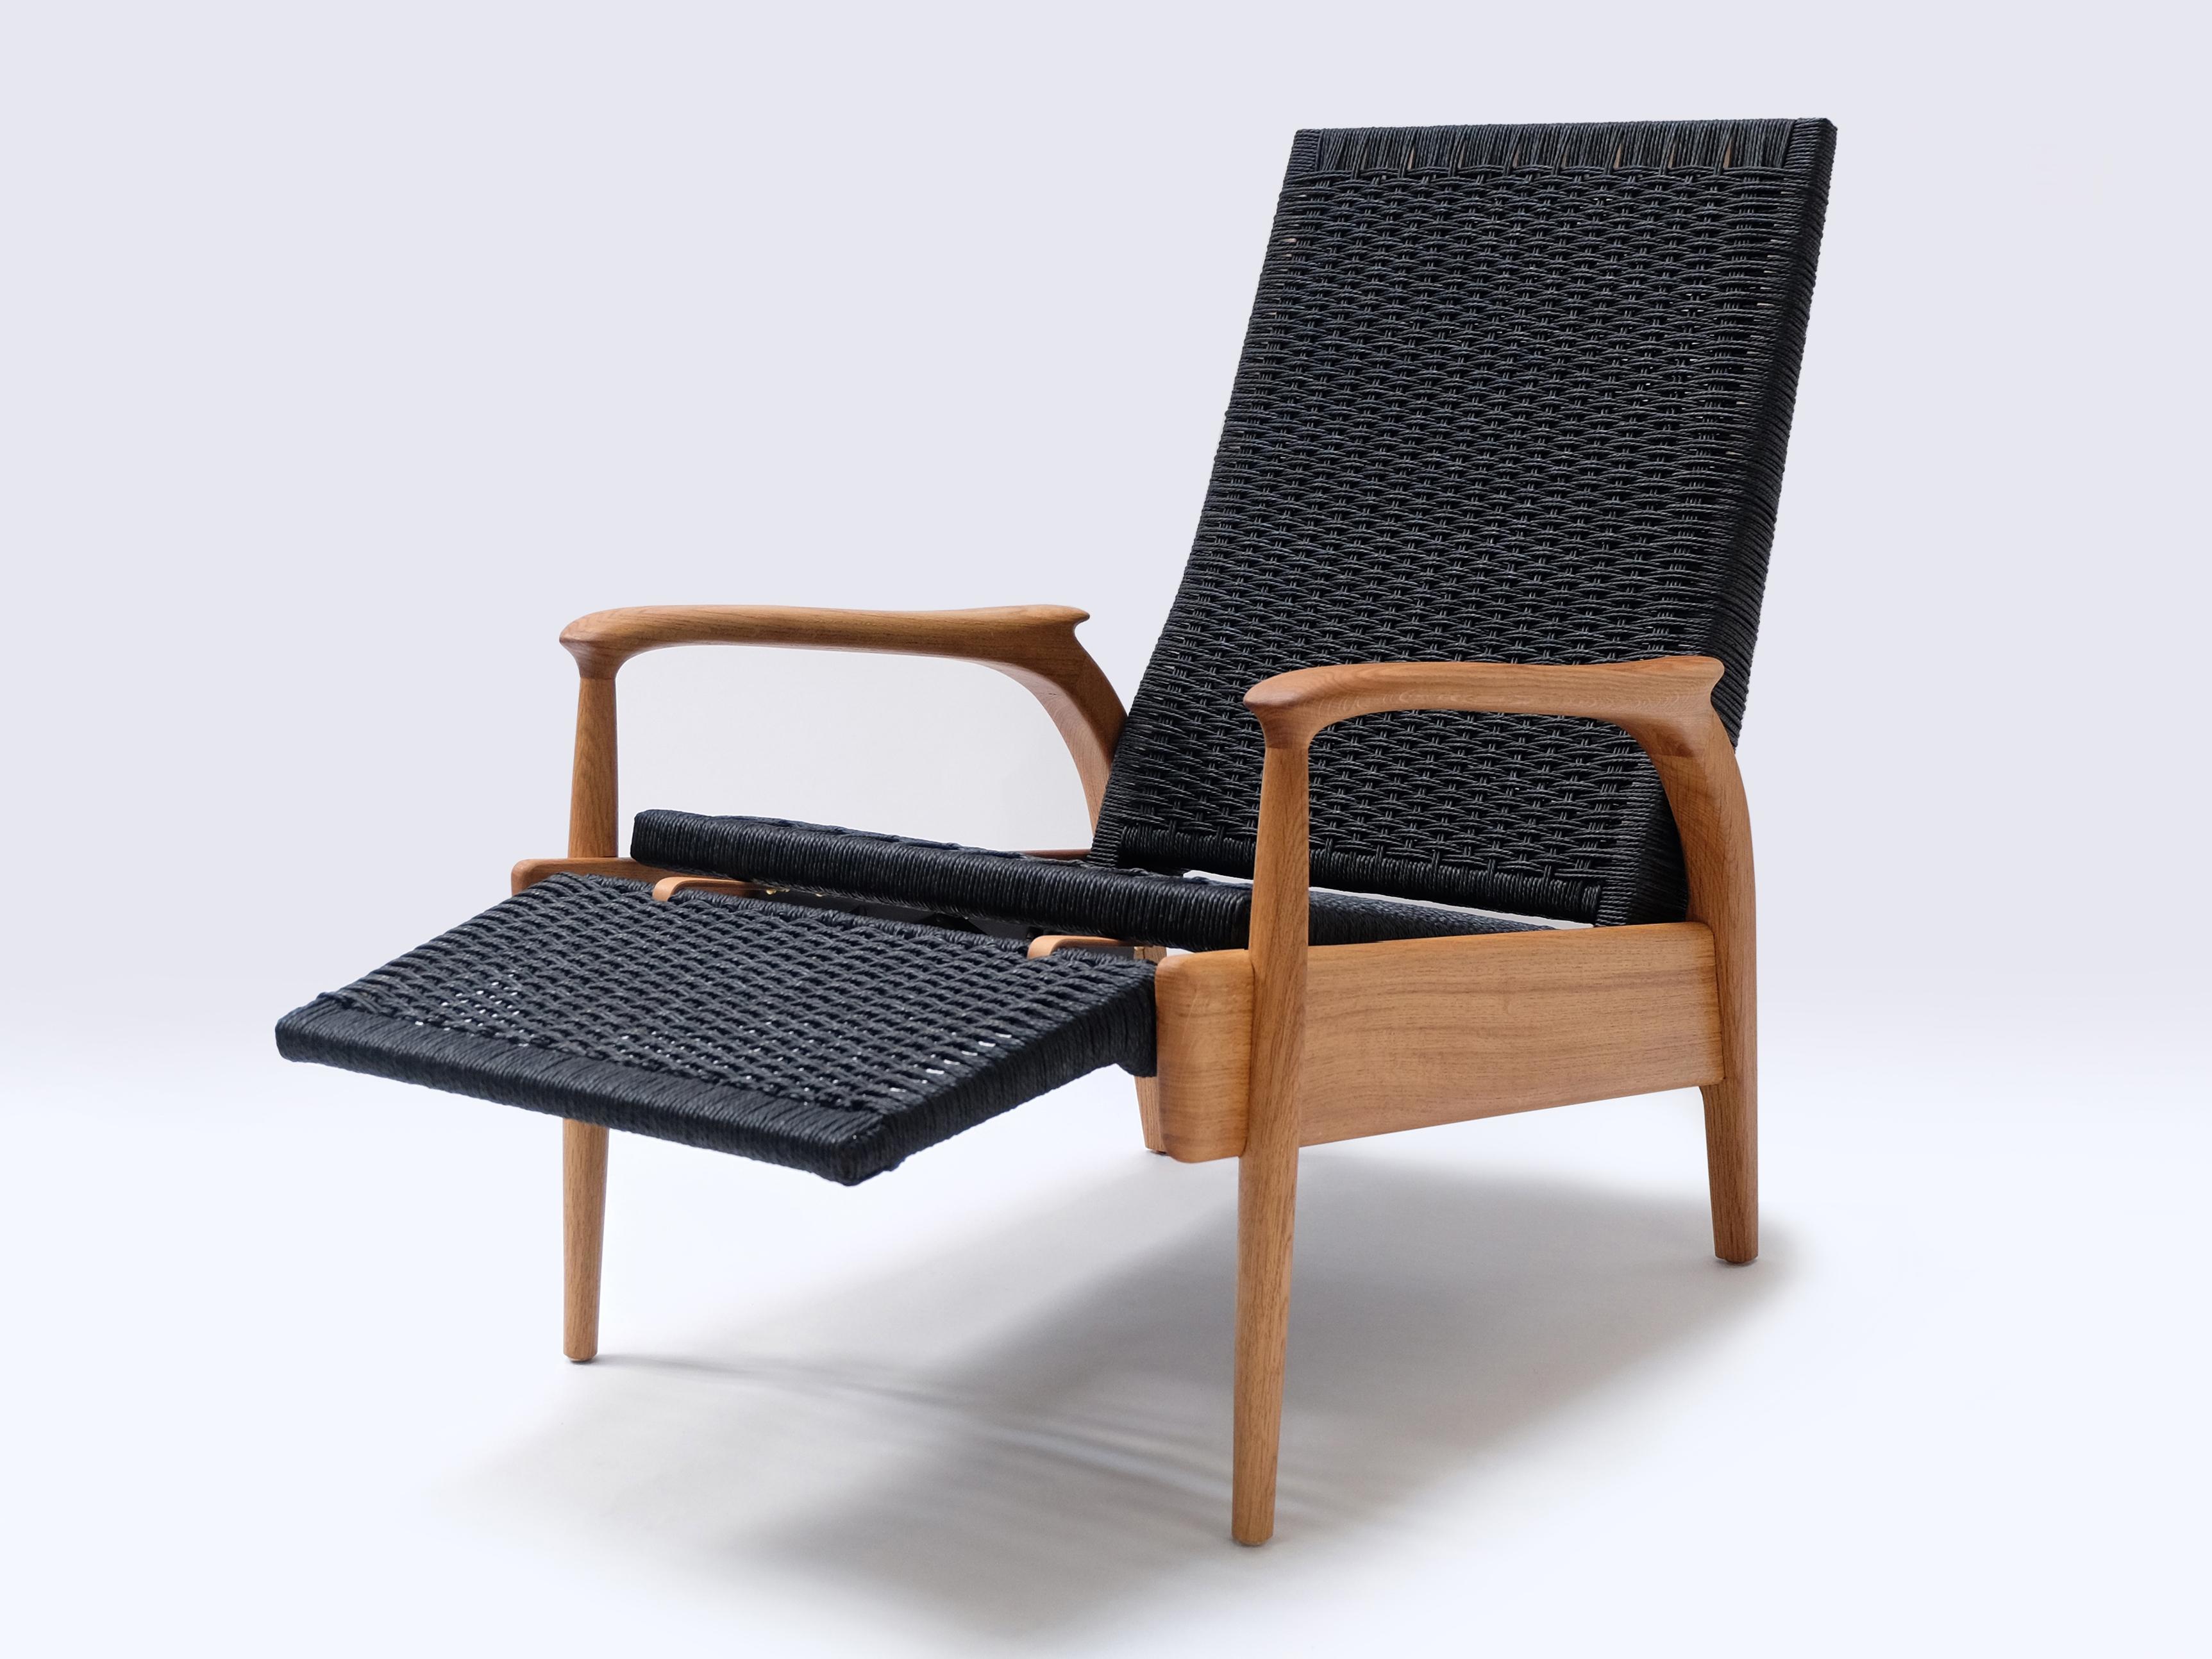 Anglais Paire de fauteuils inclinables, Oak Oak massif, corde danoise noire, coussins en cuir en vente